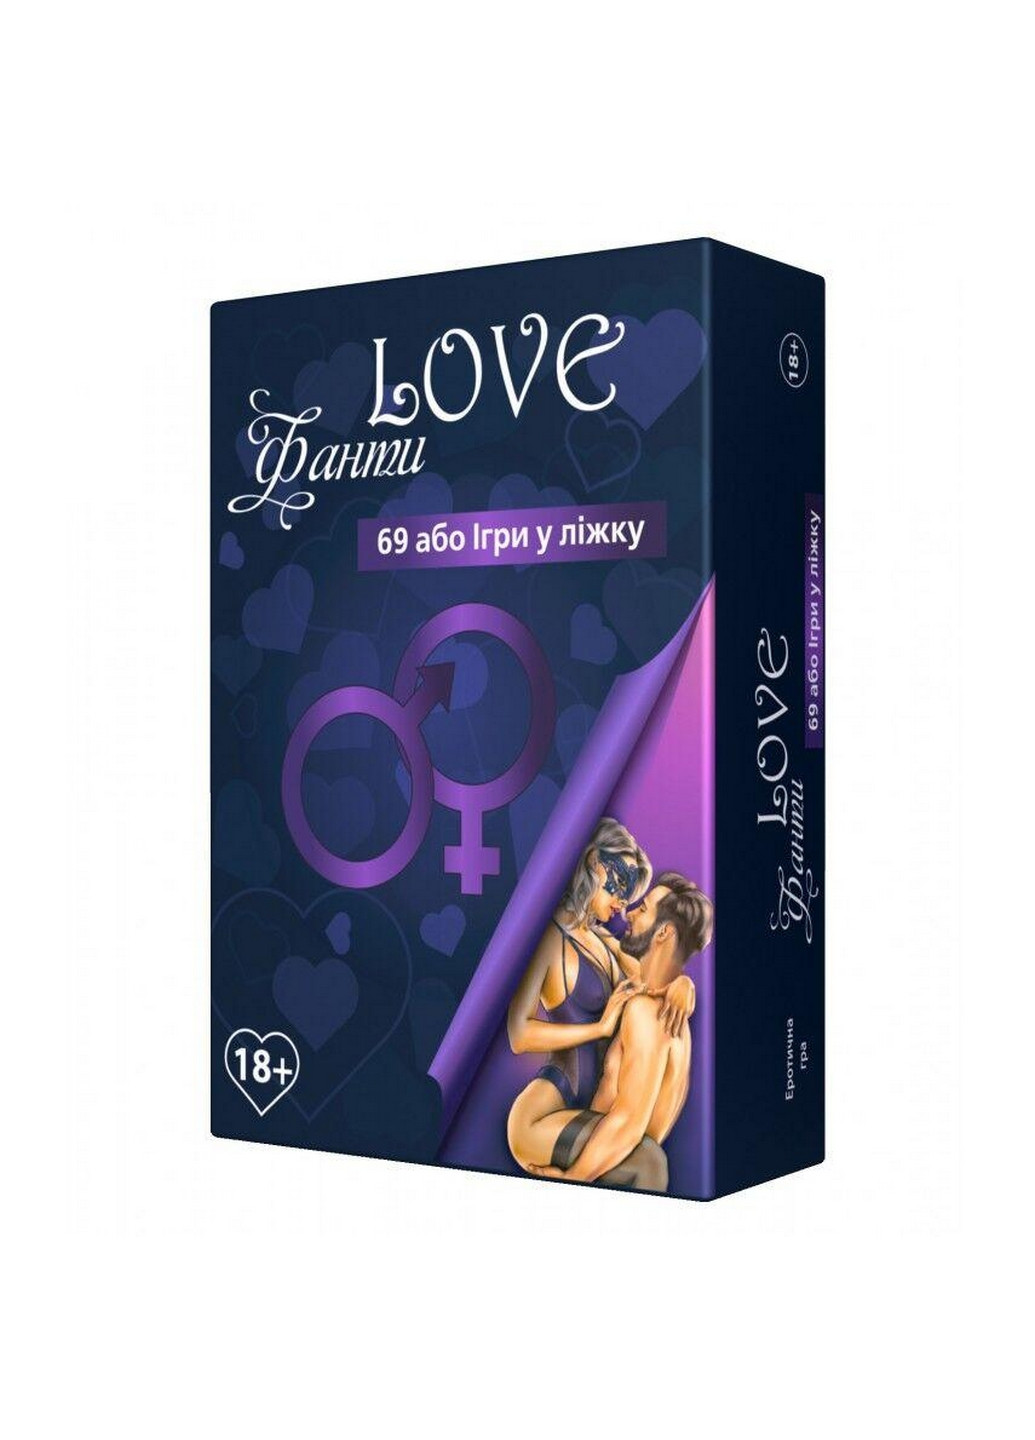 Эротическая игра «LOVE Фанты: 69 или игра в постели» (UA) 18+ Flixplay (260513745)